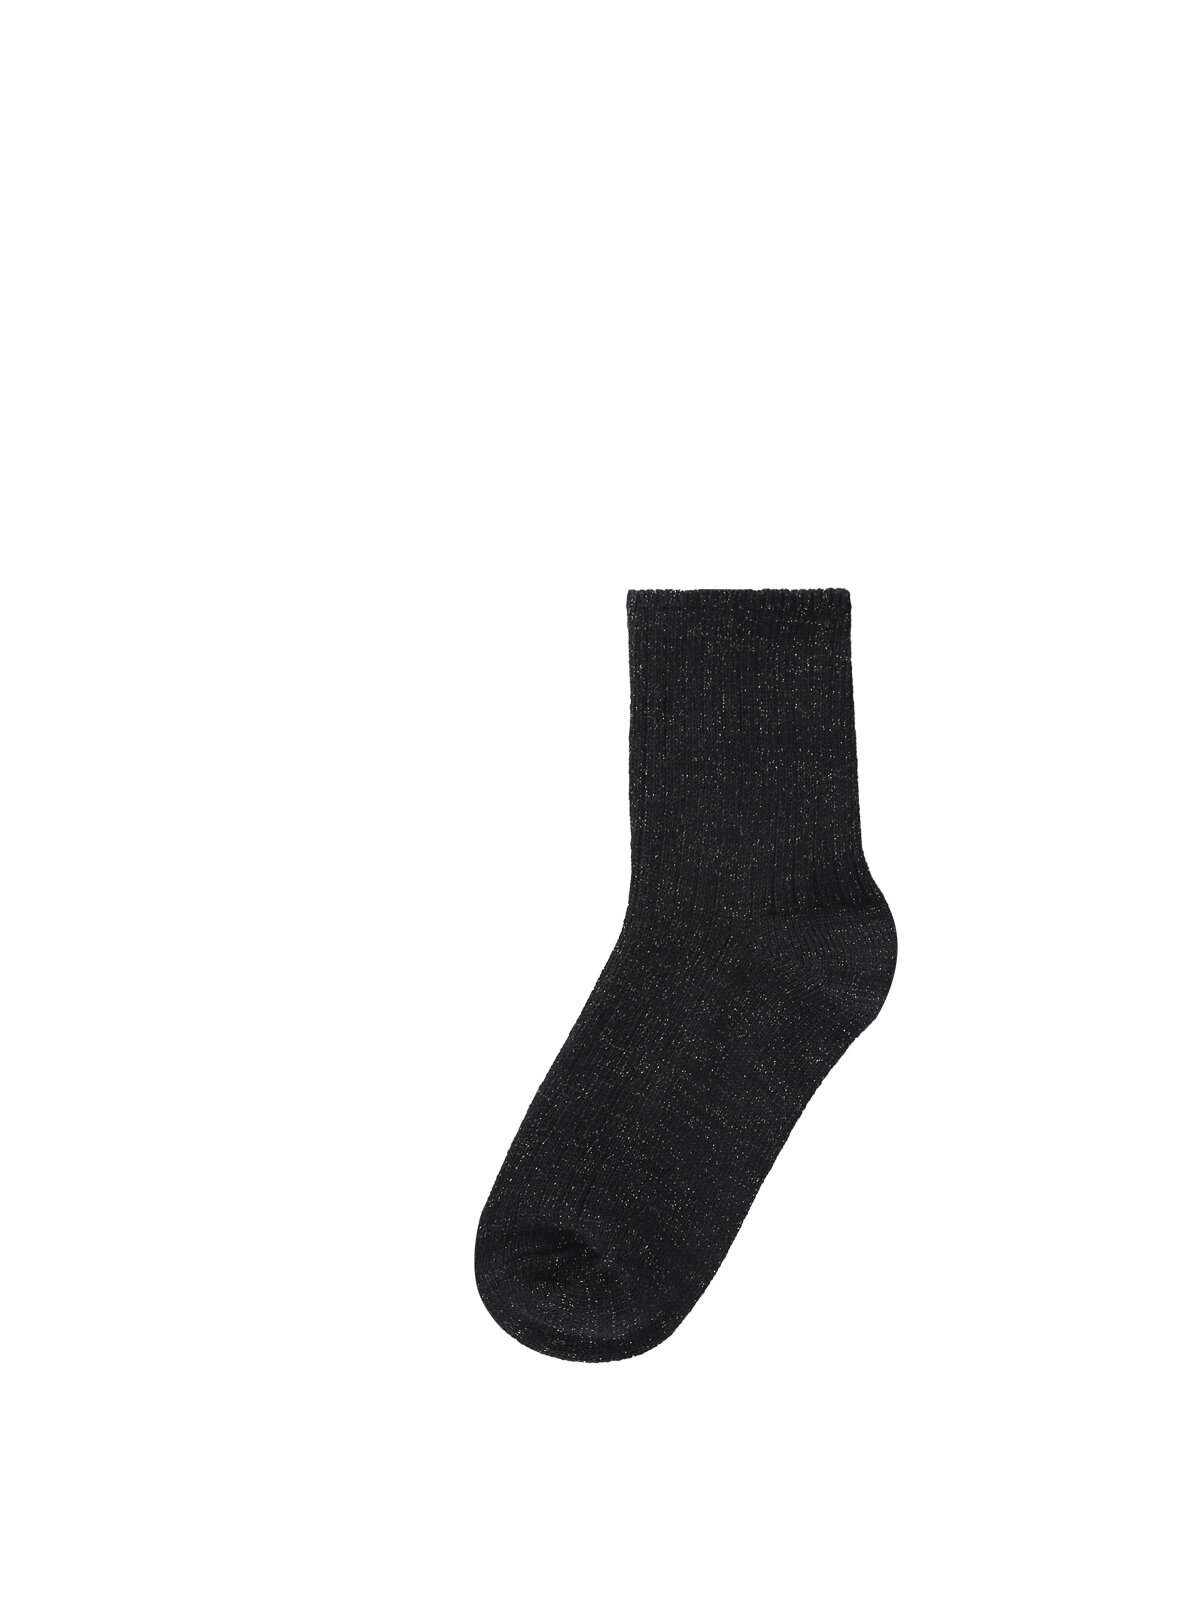 Показати інформацію про Шкарпетки Жіночі Чорні Cl1036737